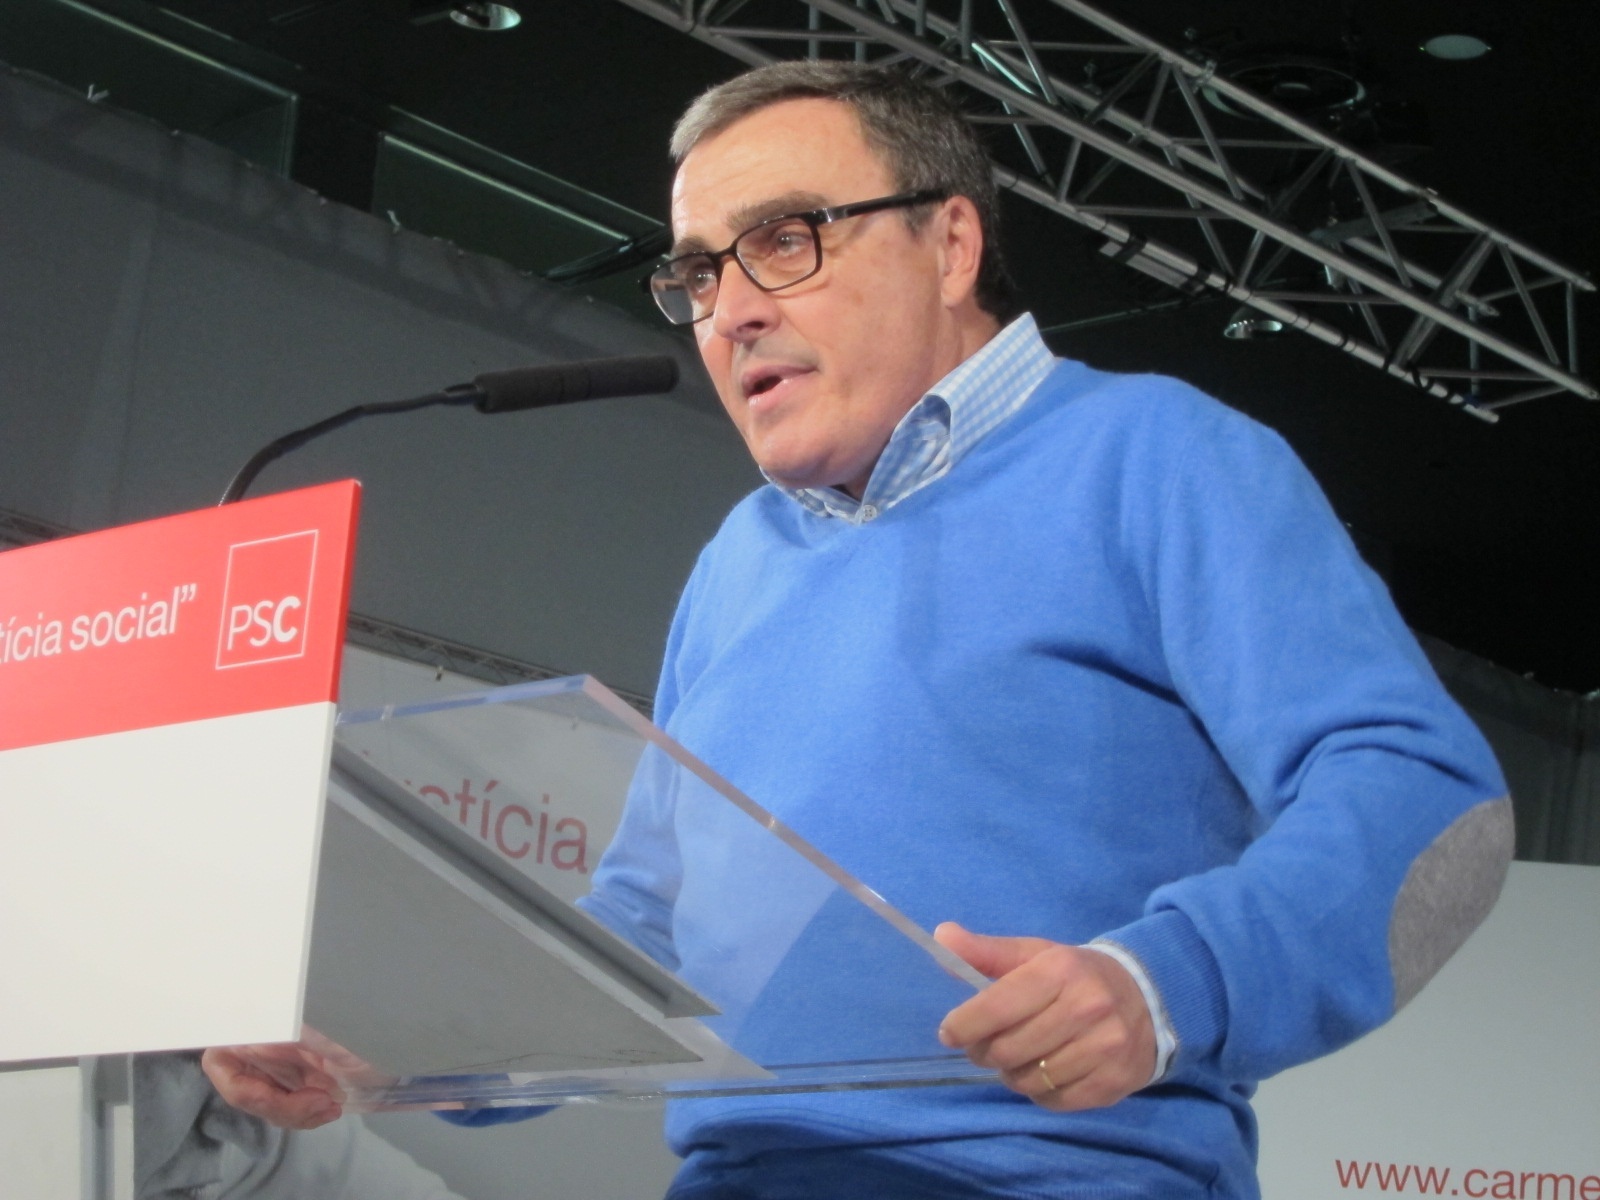 El alcalde de Lleida quiere ser presidente de la Generalitat cuando el PSC desplace al actual Gobierno de CiU